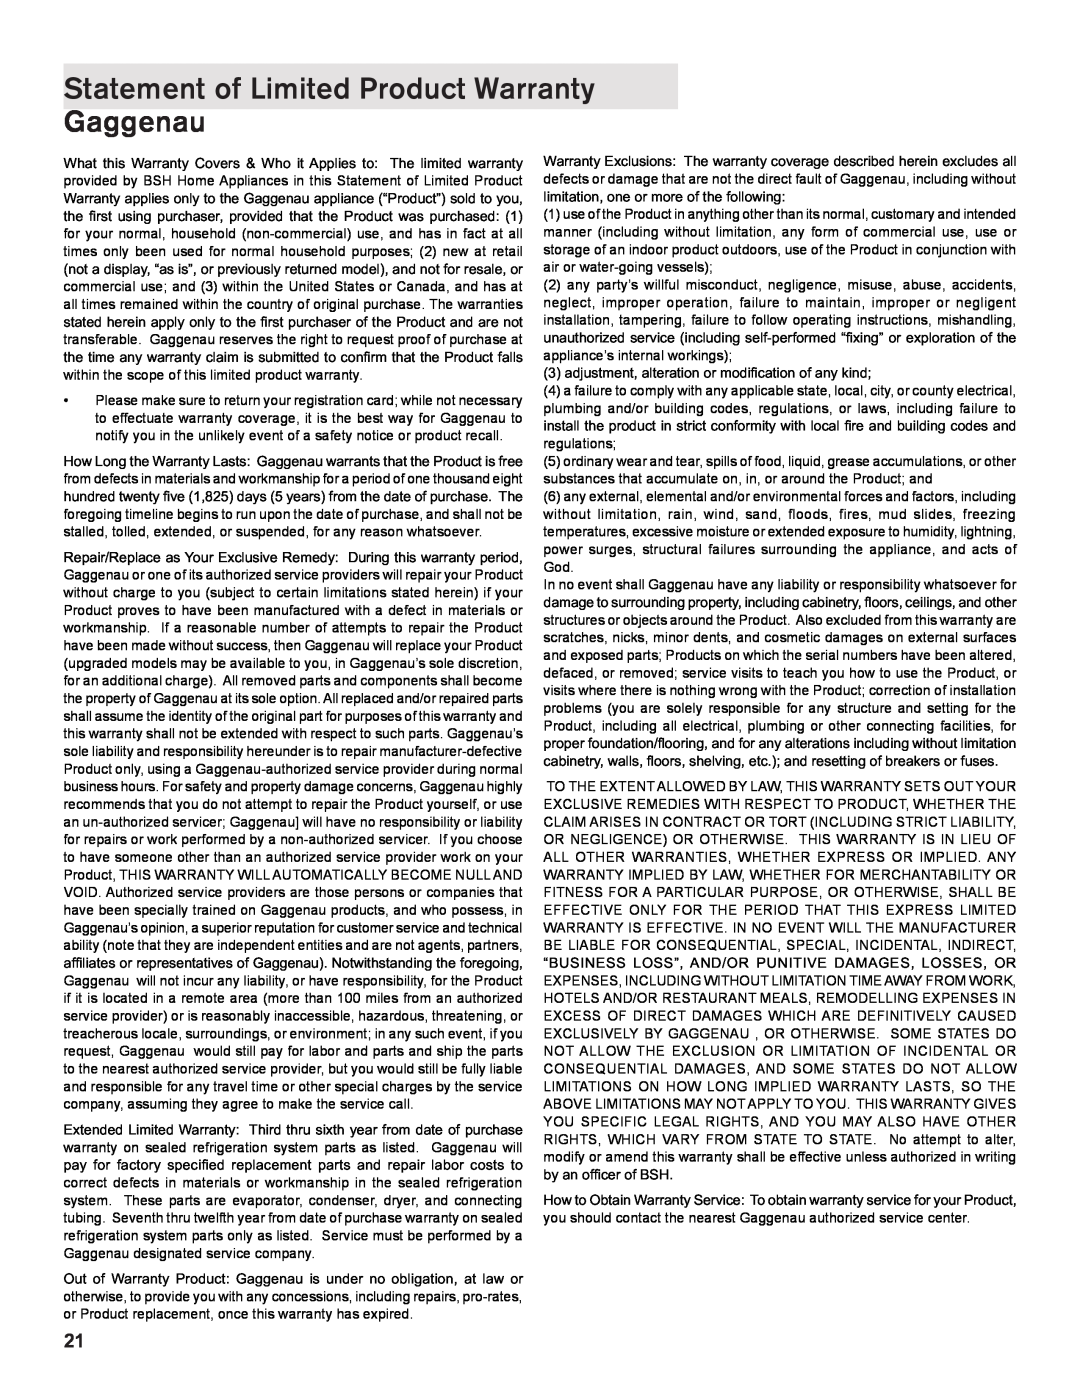 Gaggenau DF 241 manual Statement of Limited Product Warranty Gaggenau 